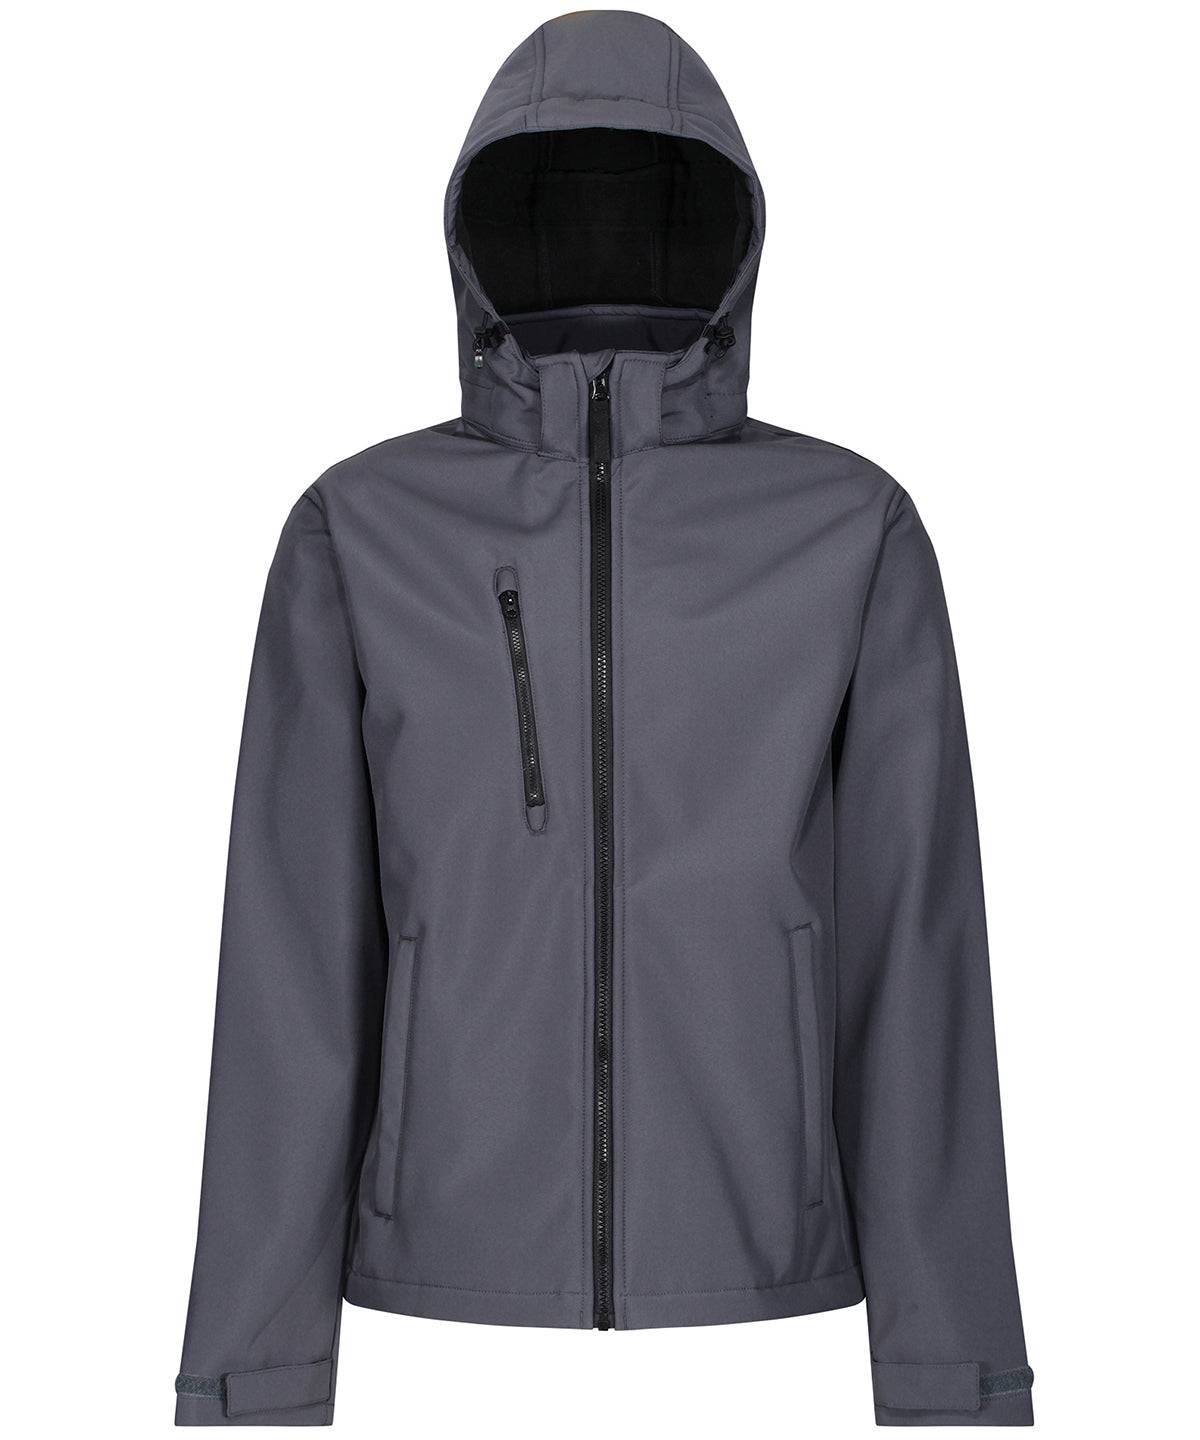 Seal Grey/Black - Venturer 3-layer hooded softshell jacket